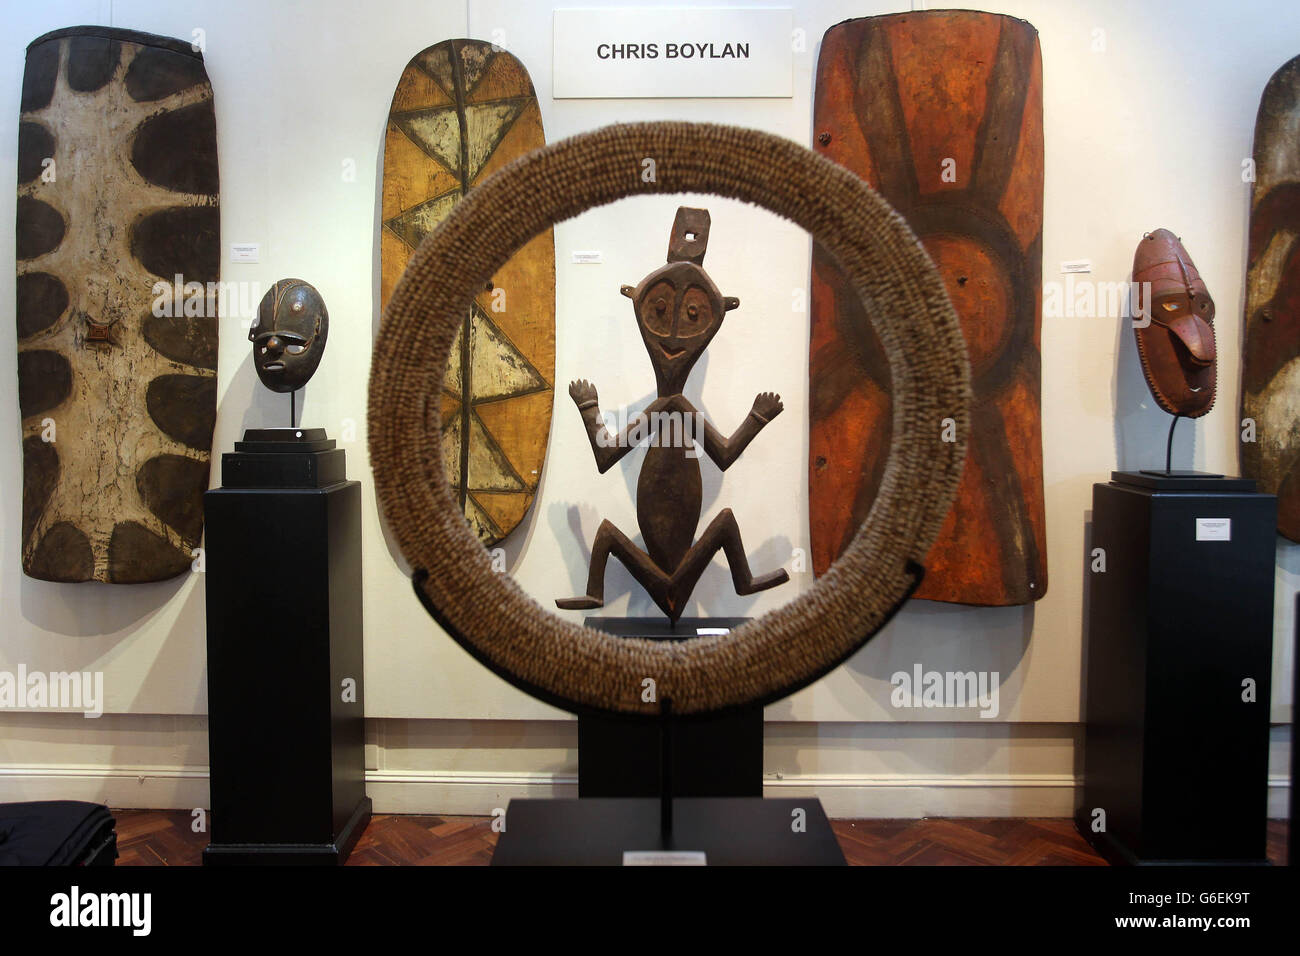 Eine weibliche rituelle Figur aus den Torocelli-Bergen in Papua-Neuguinea wird während eines Fotoaufrufs zur Tribal Perspectives-Kunstausstellung in der Gallery in Mayfair, London, durch einen Ring aus Muscheln gesehen. Stockfoto